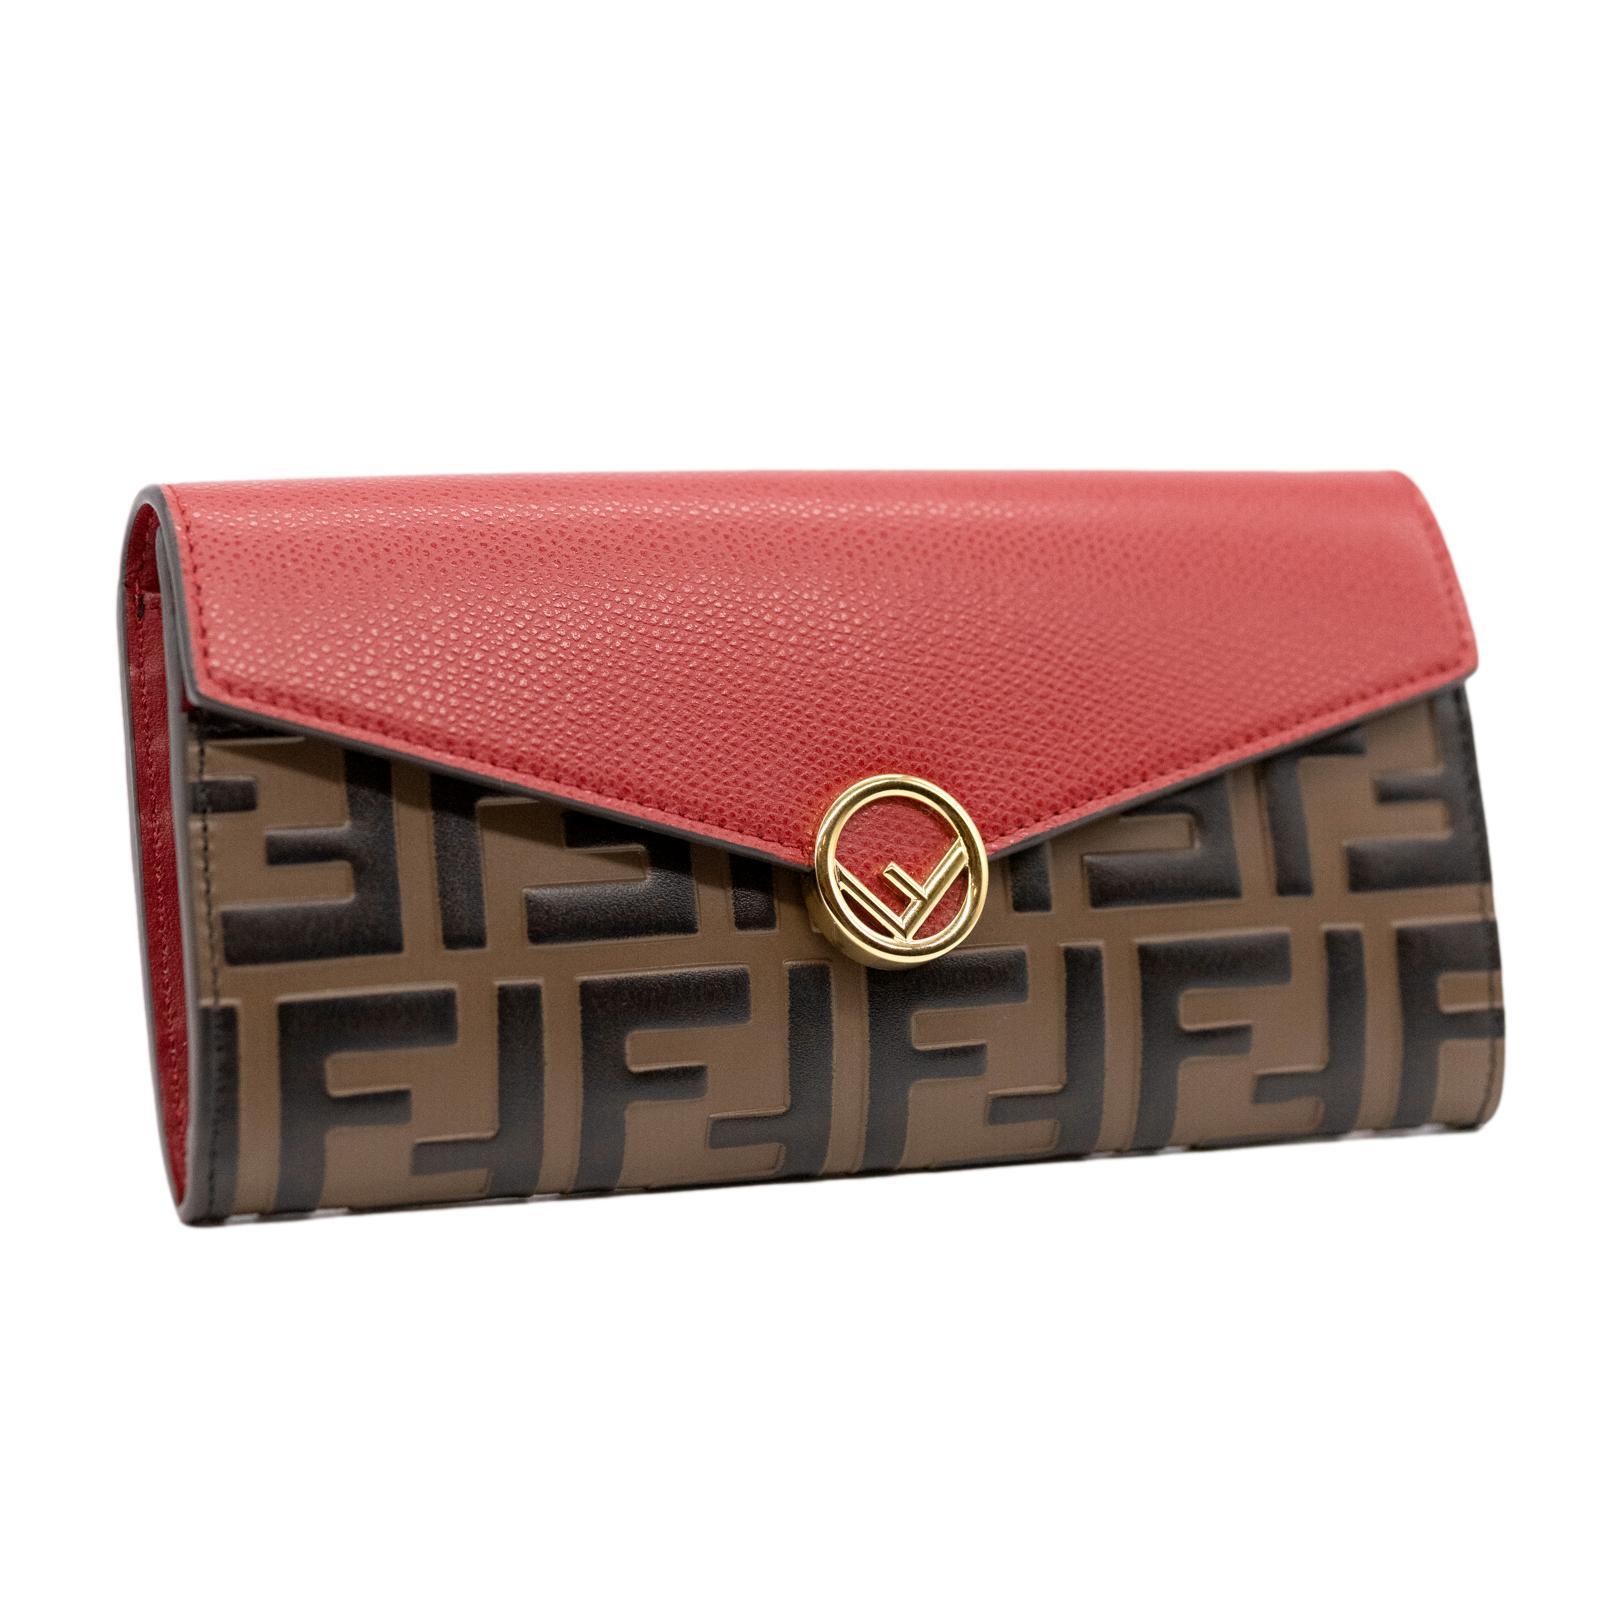 Fendi Continental Red Hand Painted Embossed Leather Wallet, 2020. Diese kultige und sehr begehrte Brieftasche des Modehauses Fendi wurde in Italien nach höchsten Luxusstandards aus getrommeltem Kalbsleder und vergoldeten Beschlägen handgefertigt.